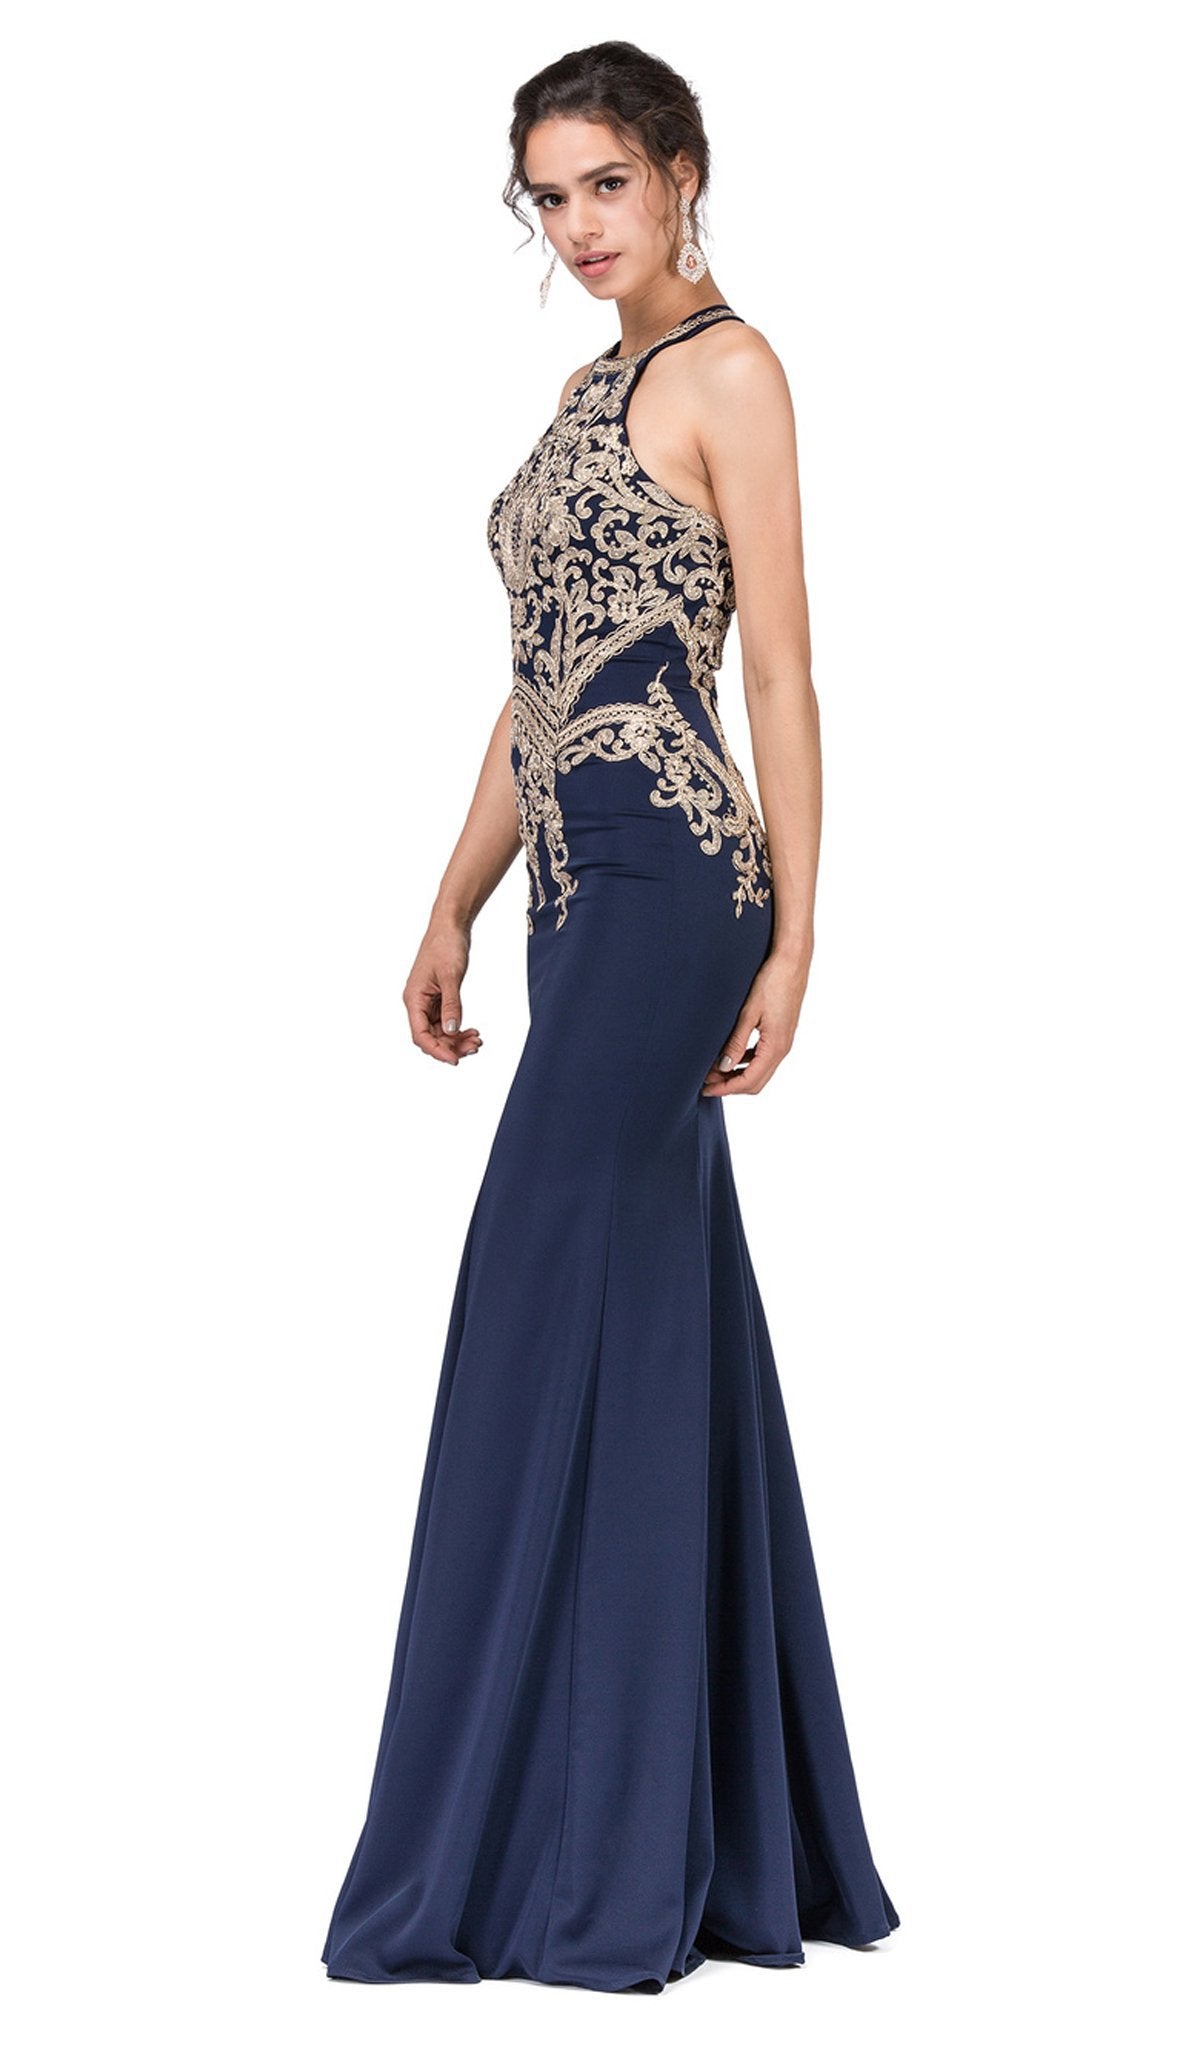 Dancing Queen - 2457 Gold Applique Halter Trumpet Prom Dress In Blue